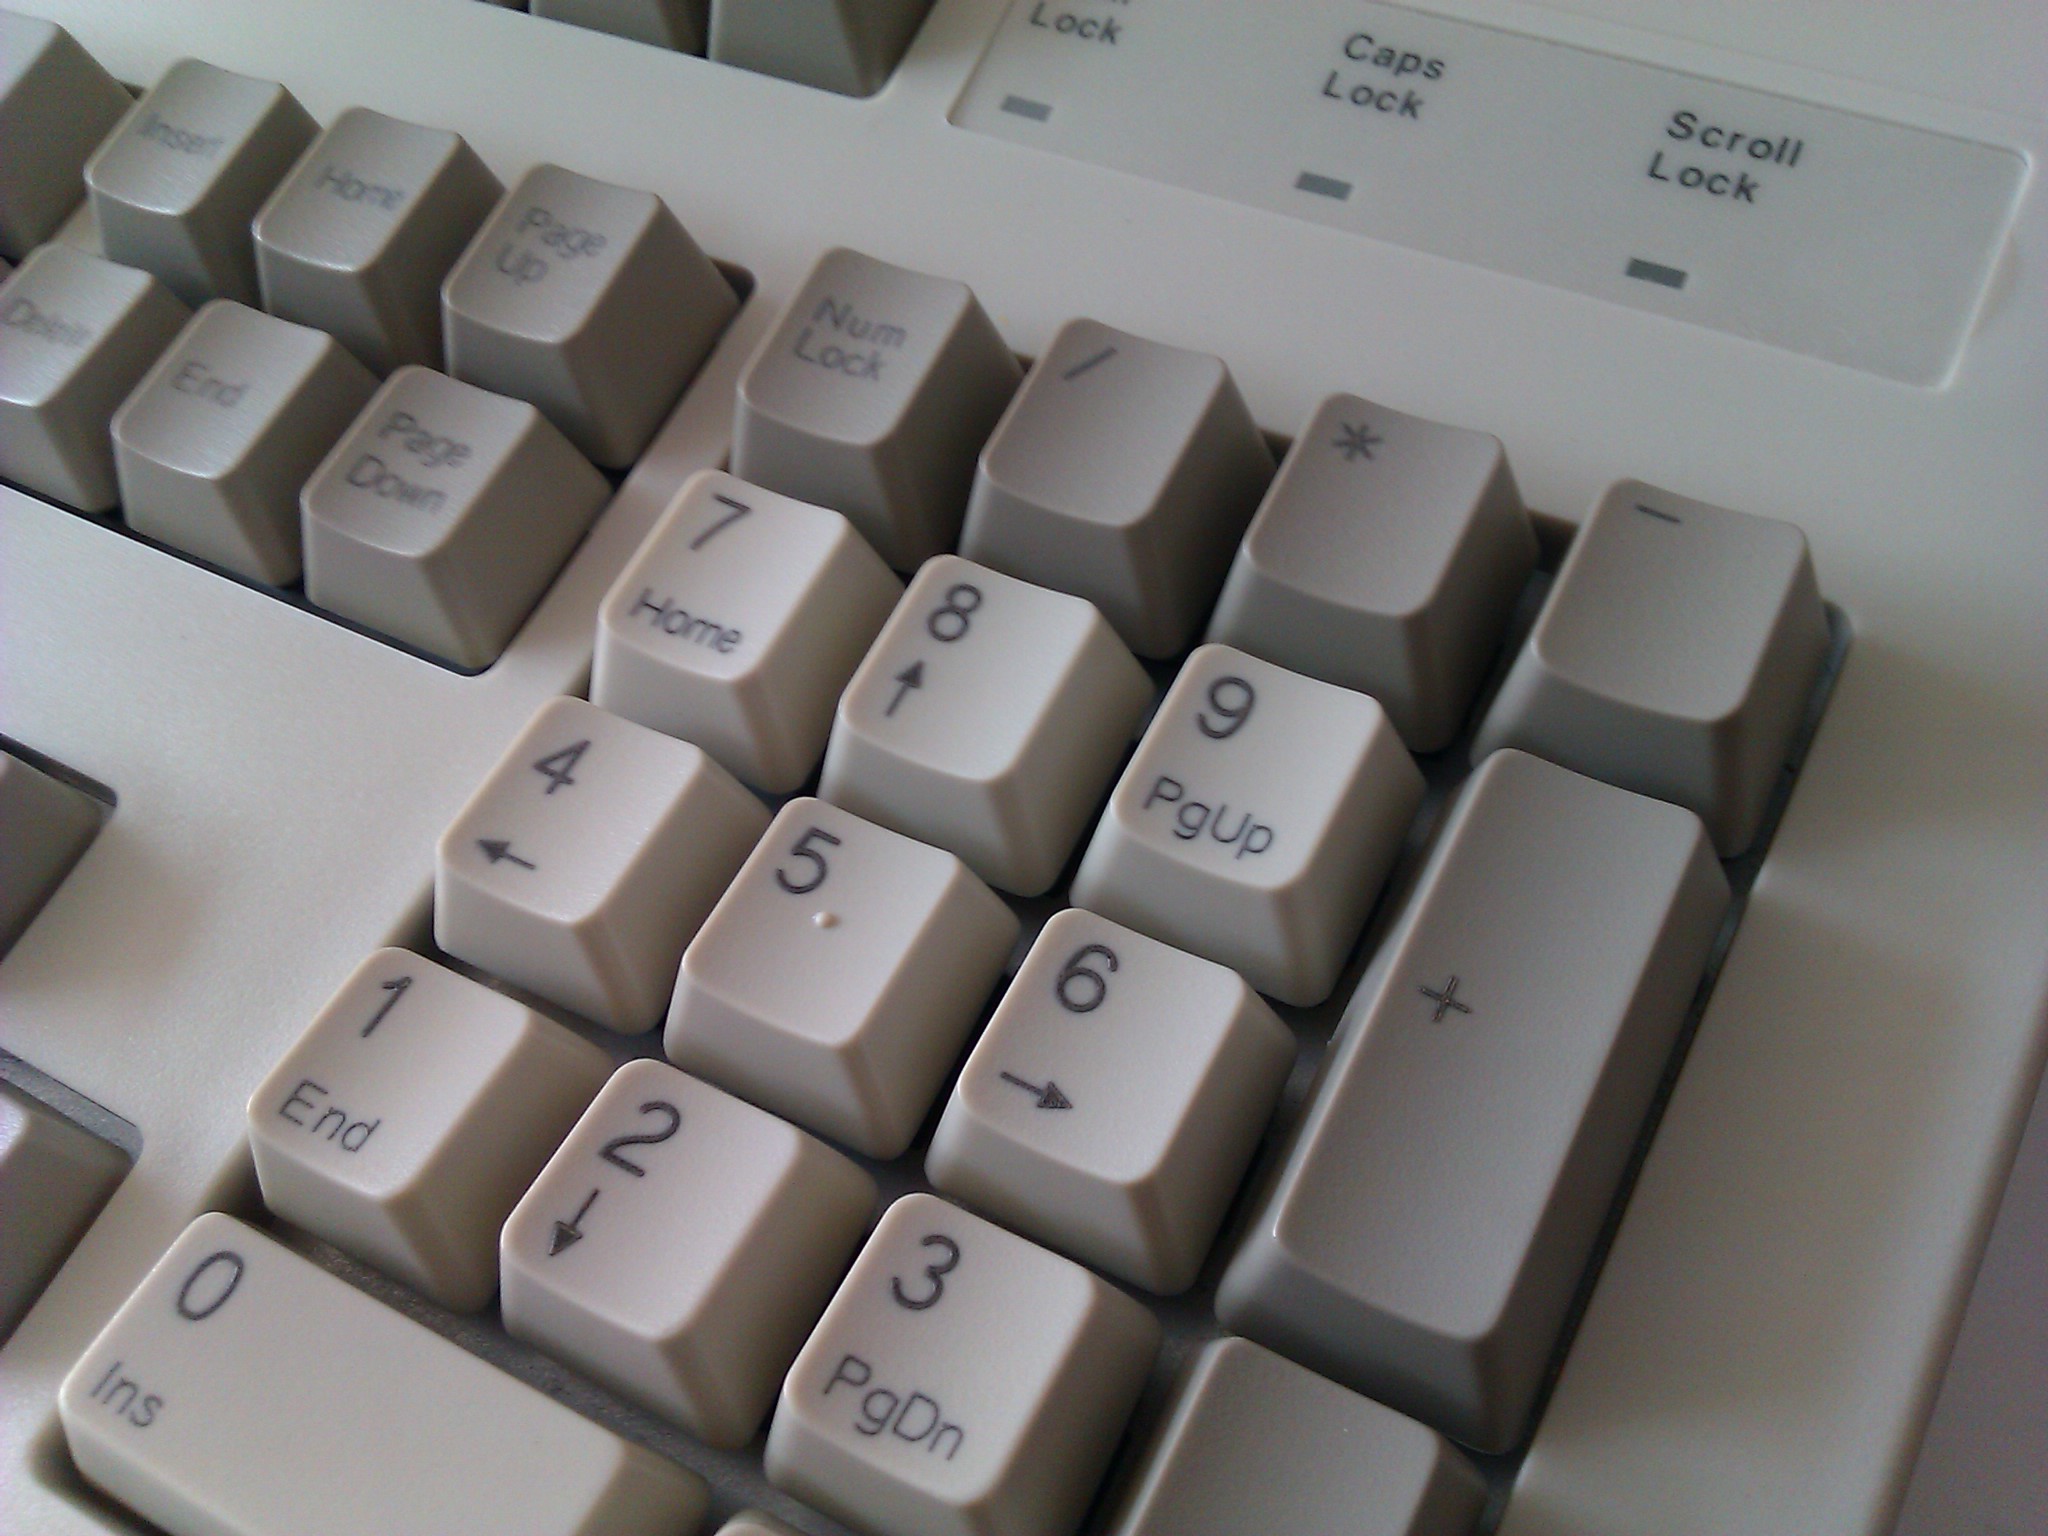 clicky keyboard